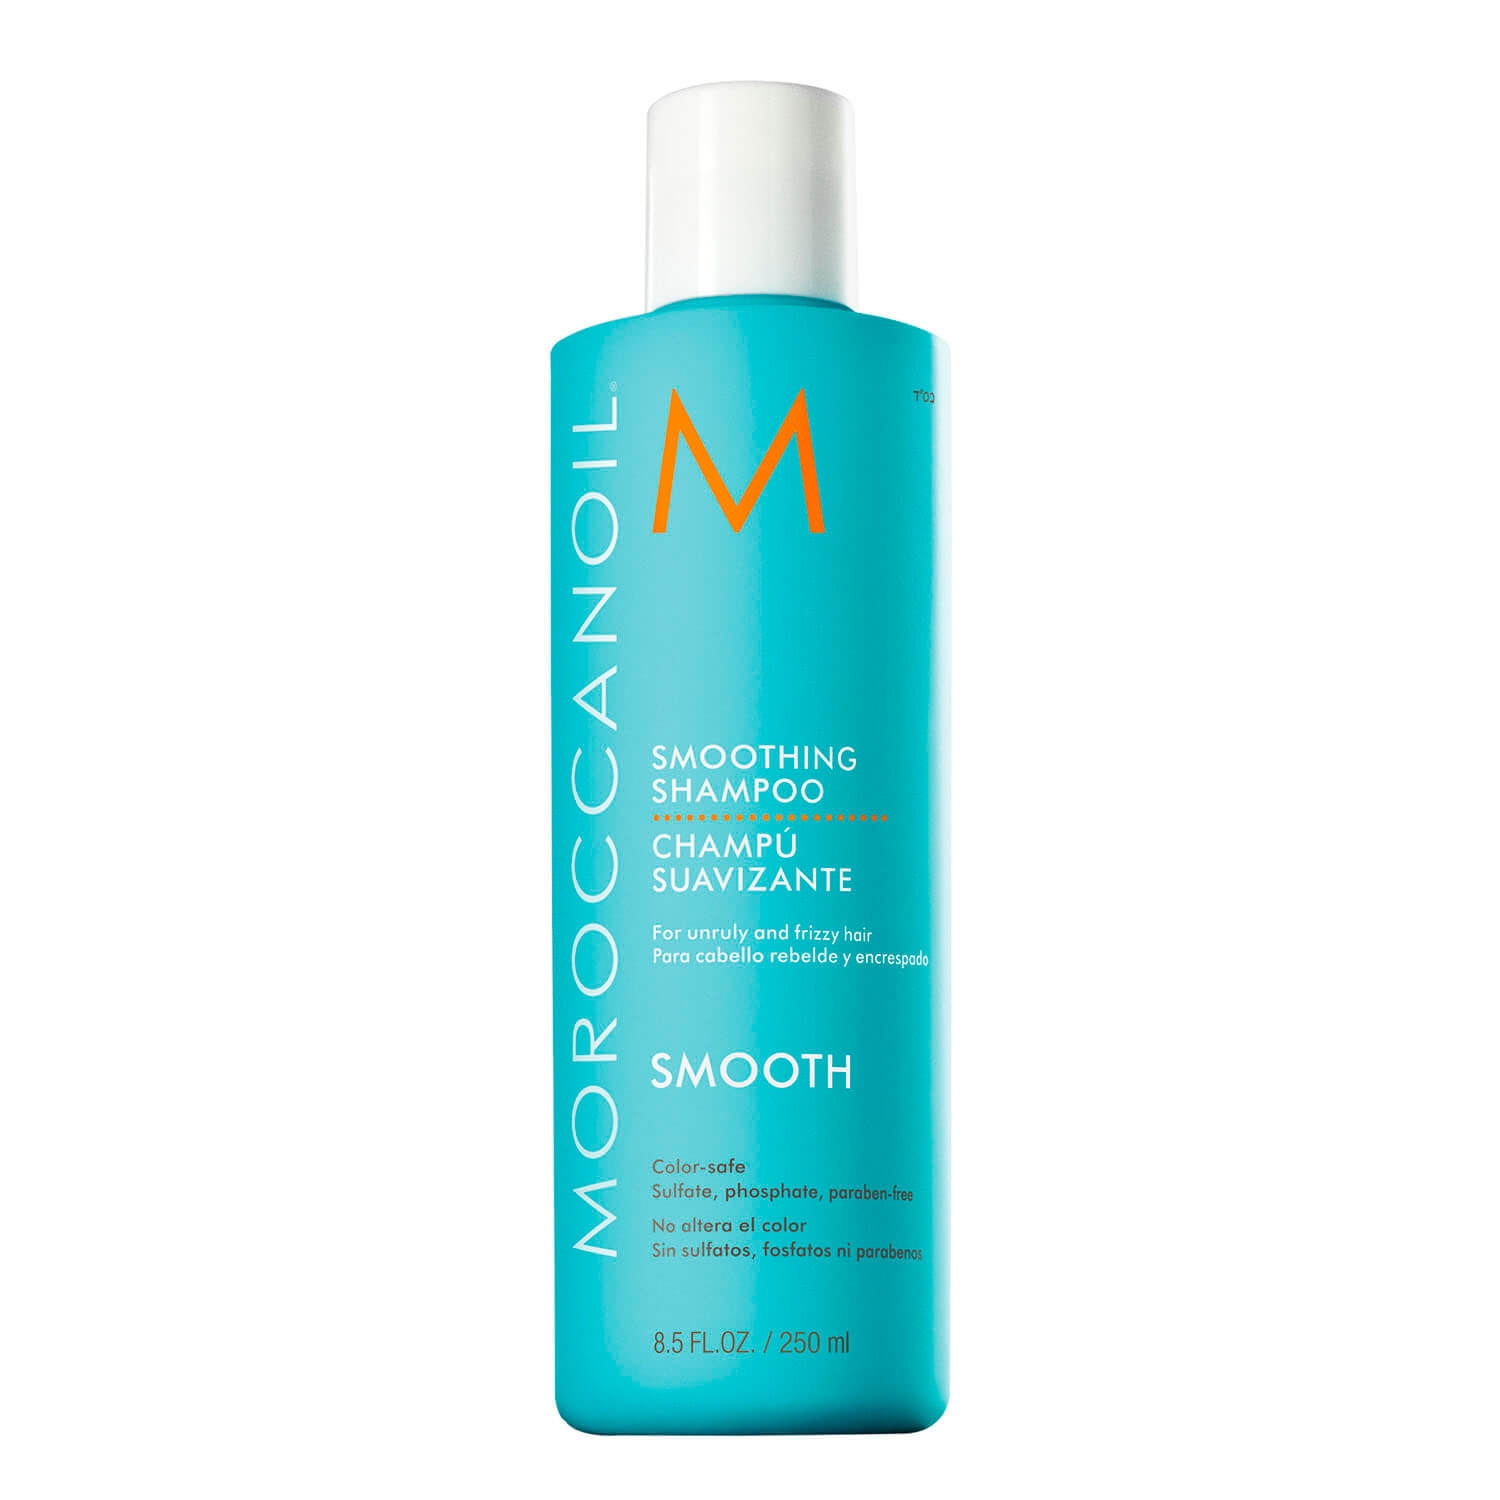 Produktbild von Moroccanoil - Smoothing Shampoo